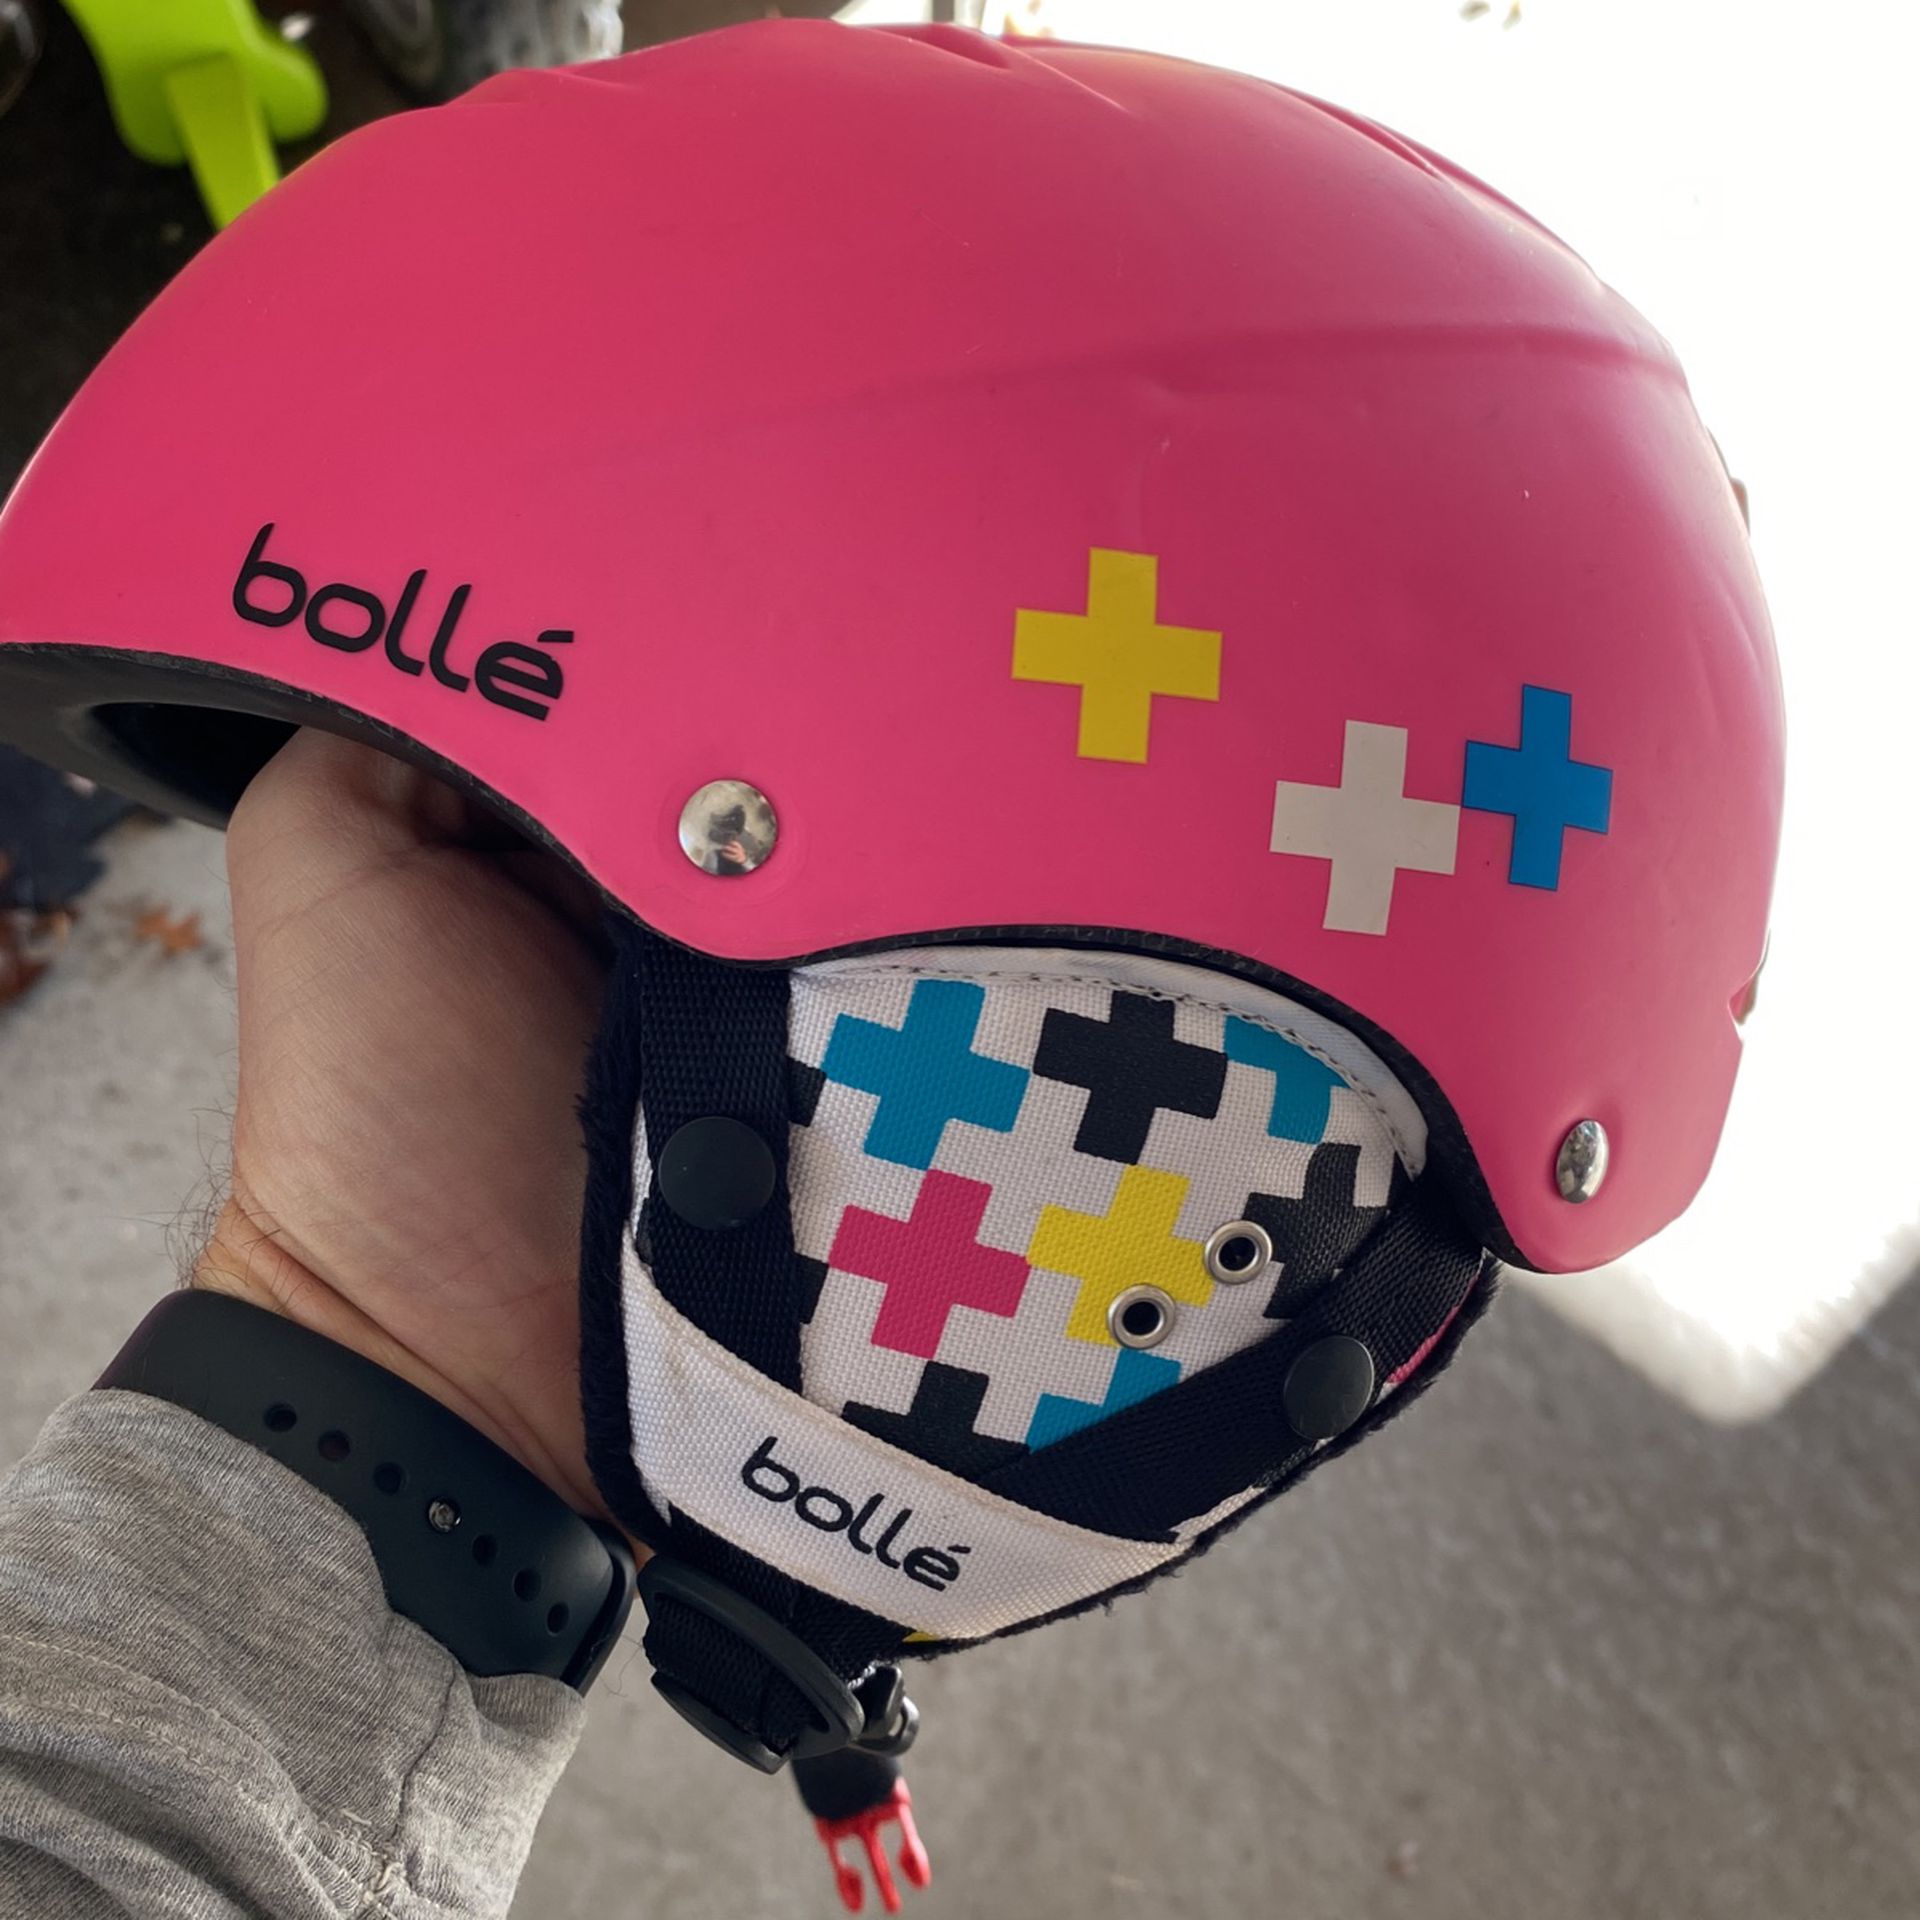 Bolle ski/snowboard Helmet (53-57cm) Adjustable!  